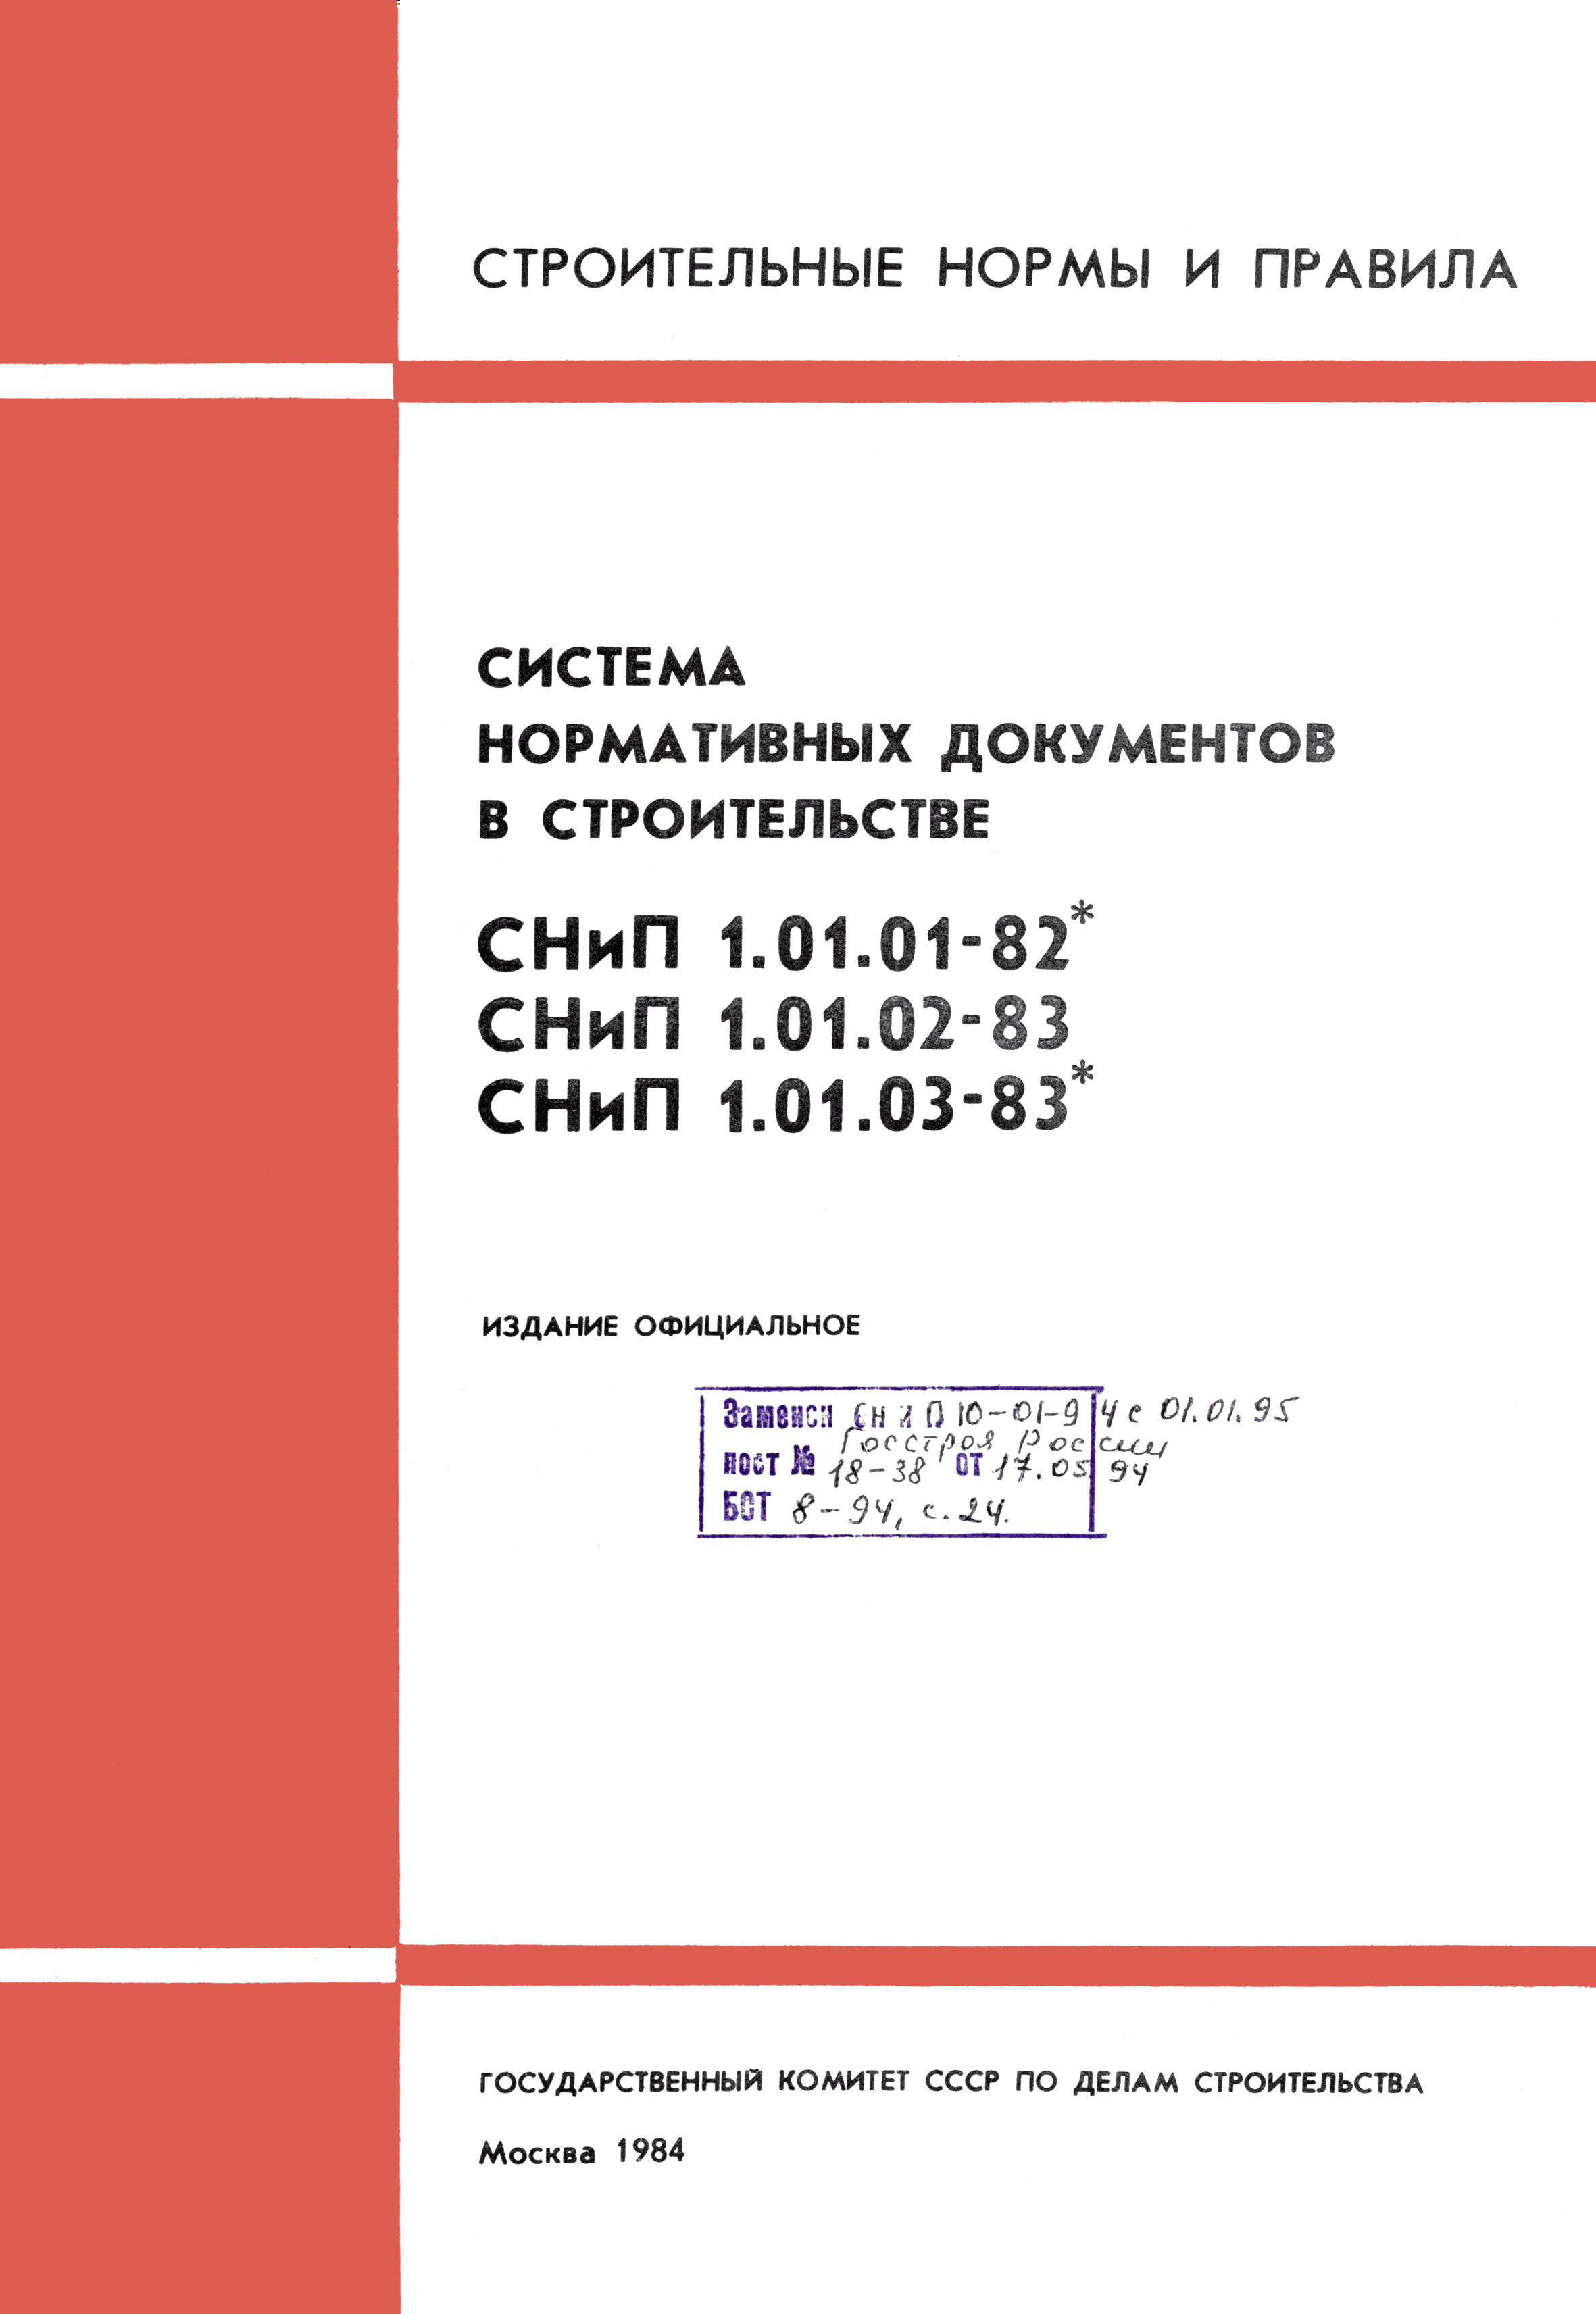 СНиП 1.01.02-83